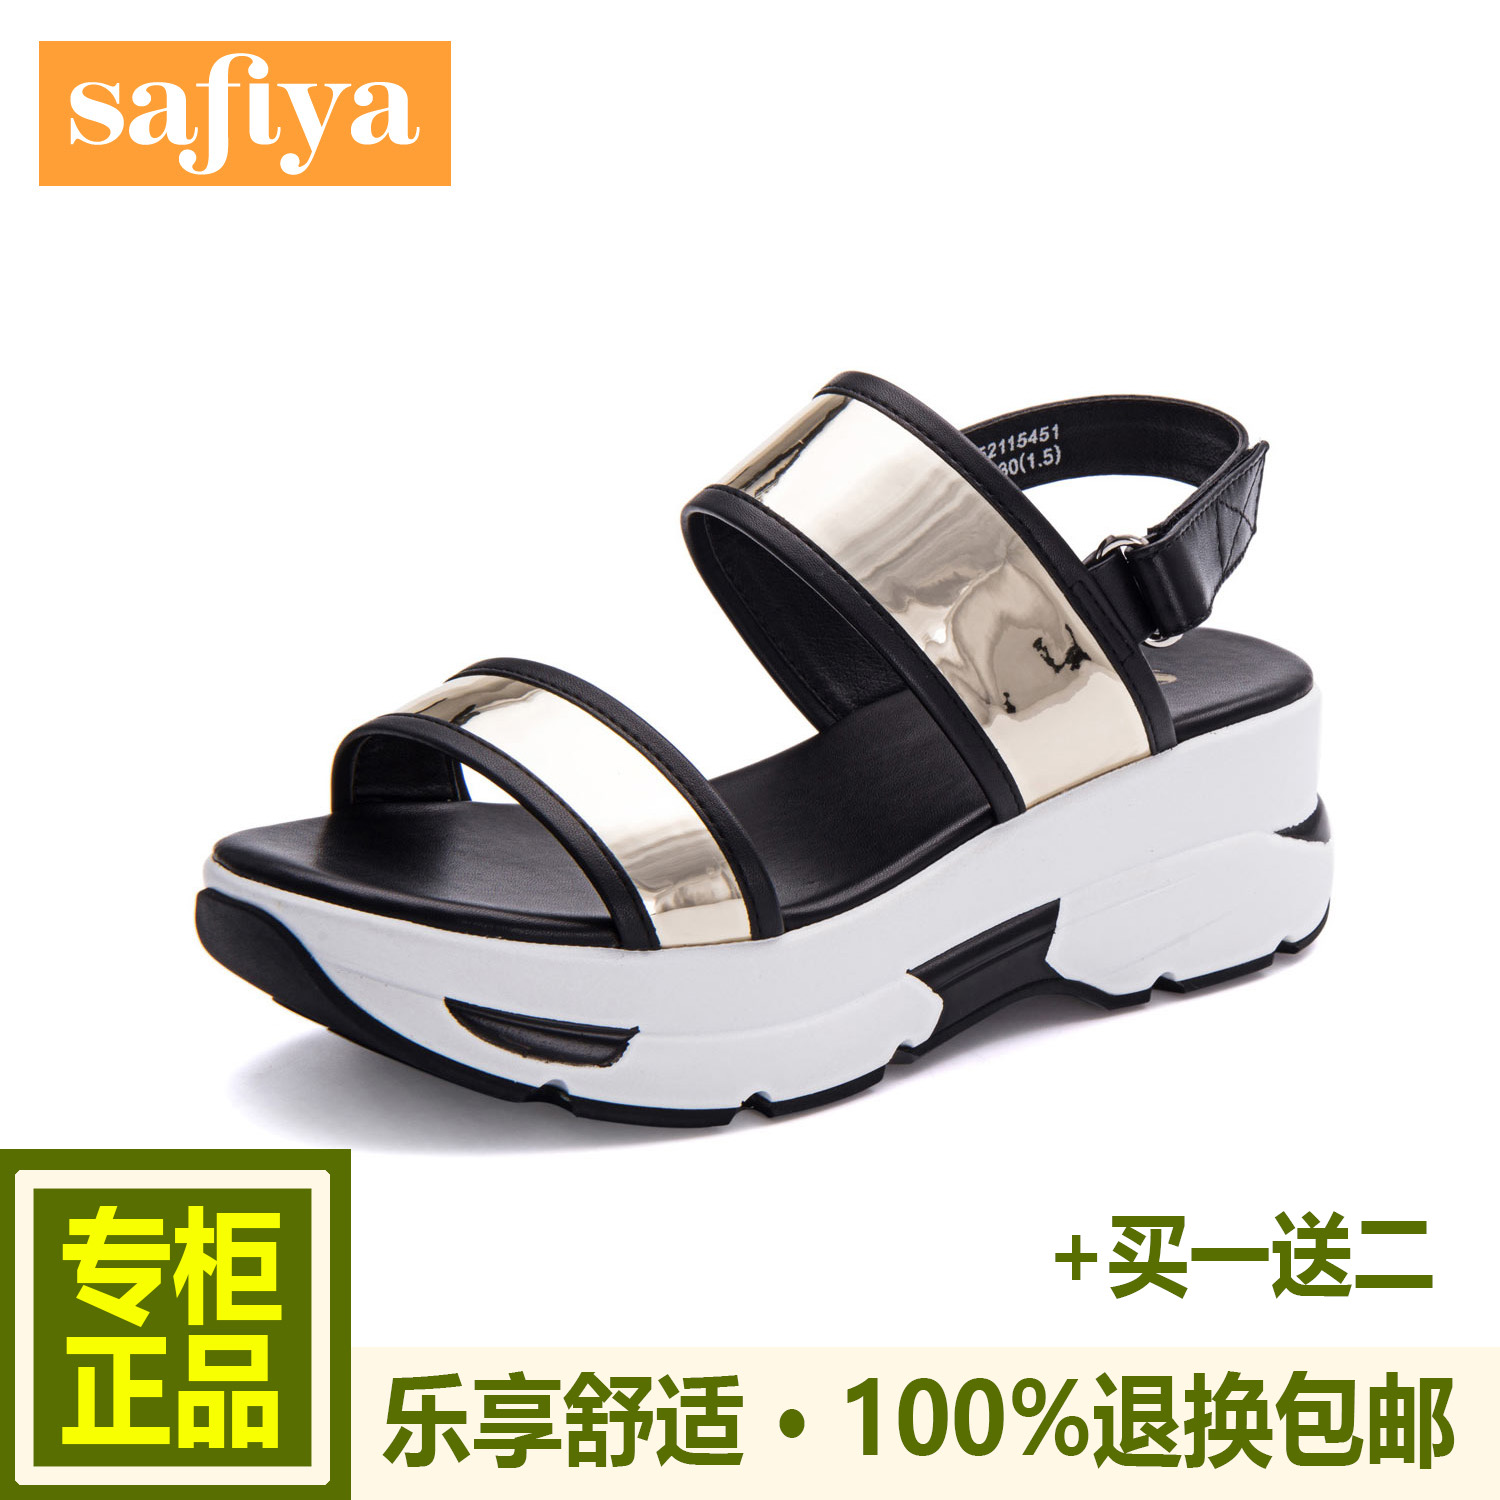 Safiya/索菲娅夏款牛皮高跟坡跟拼色凉鞋女鞋SF52115451